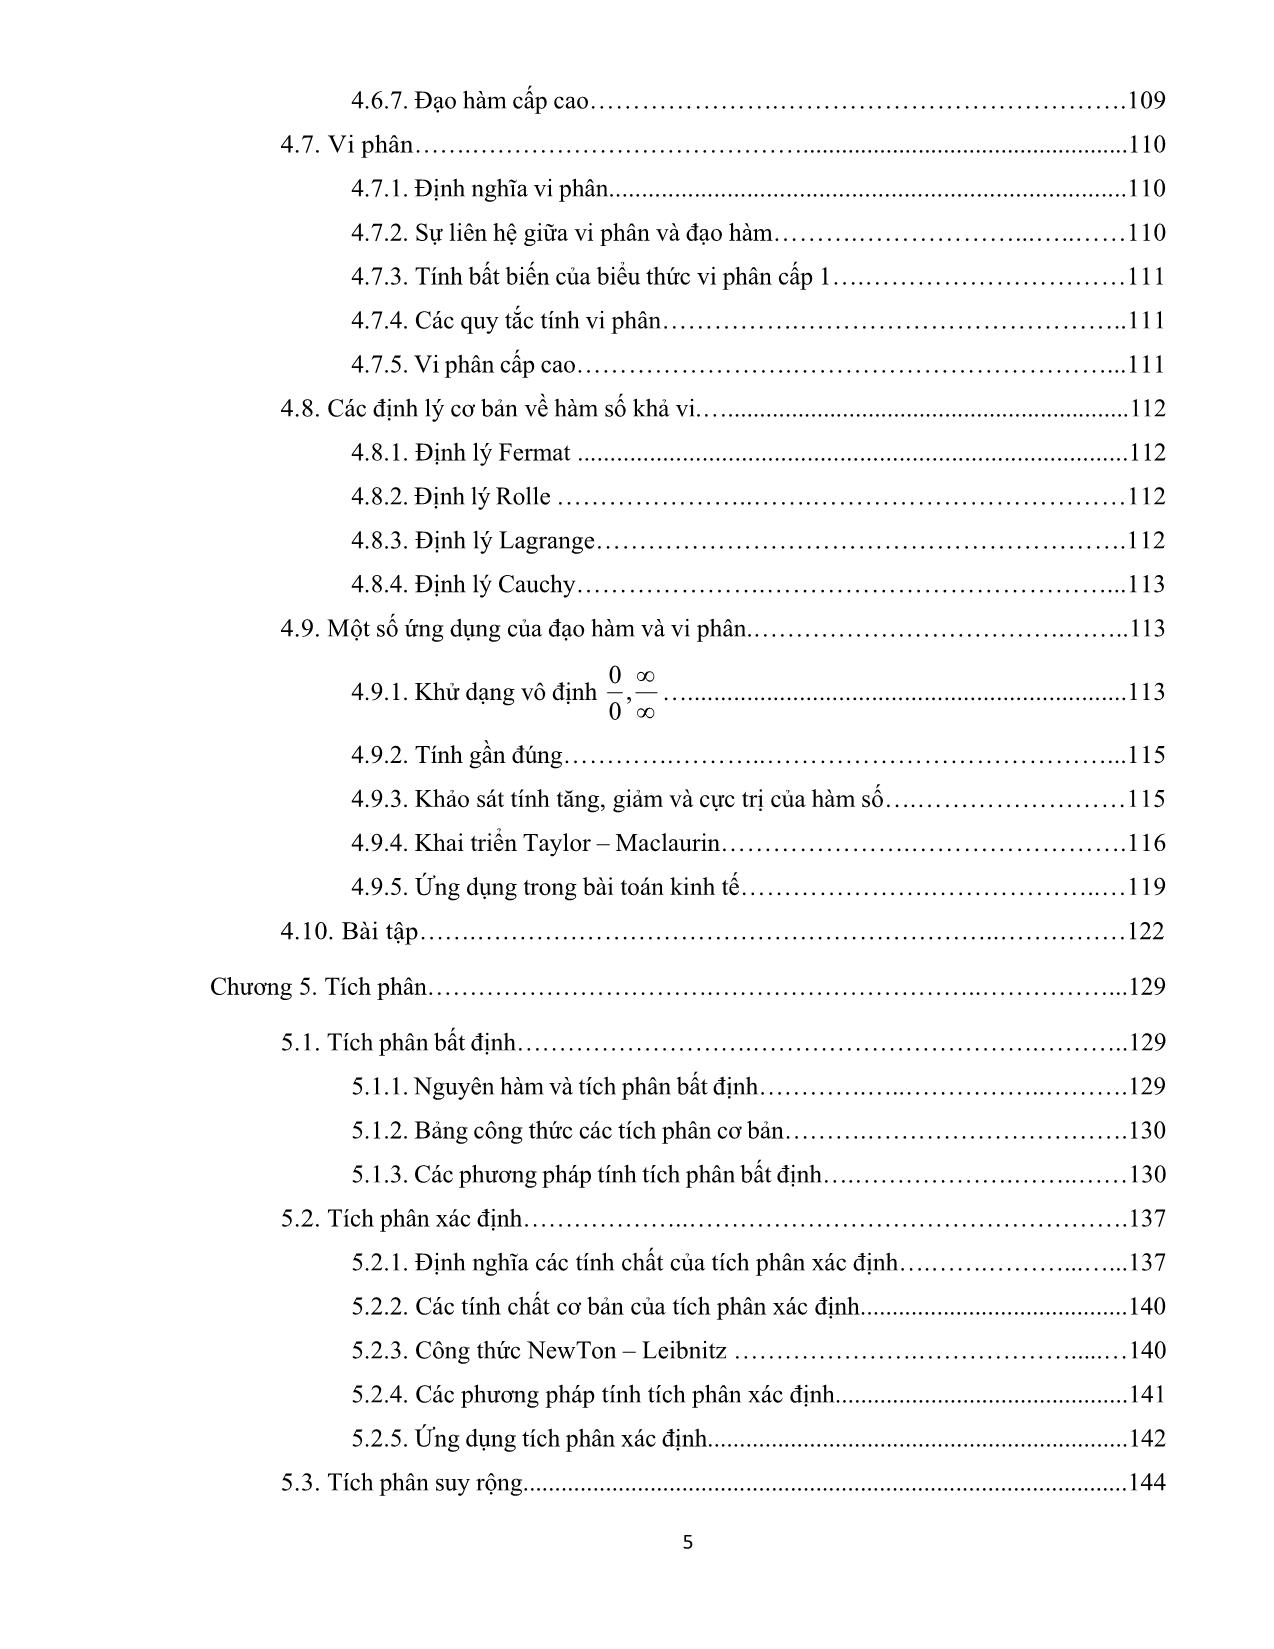 Giáo trình Toán cao cấp (Phần 1) - Nguyễn Huy Hoàng trang 5